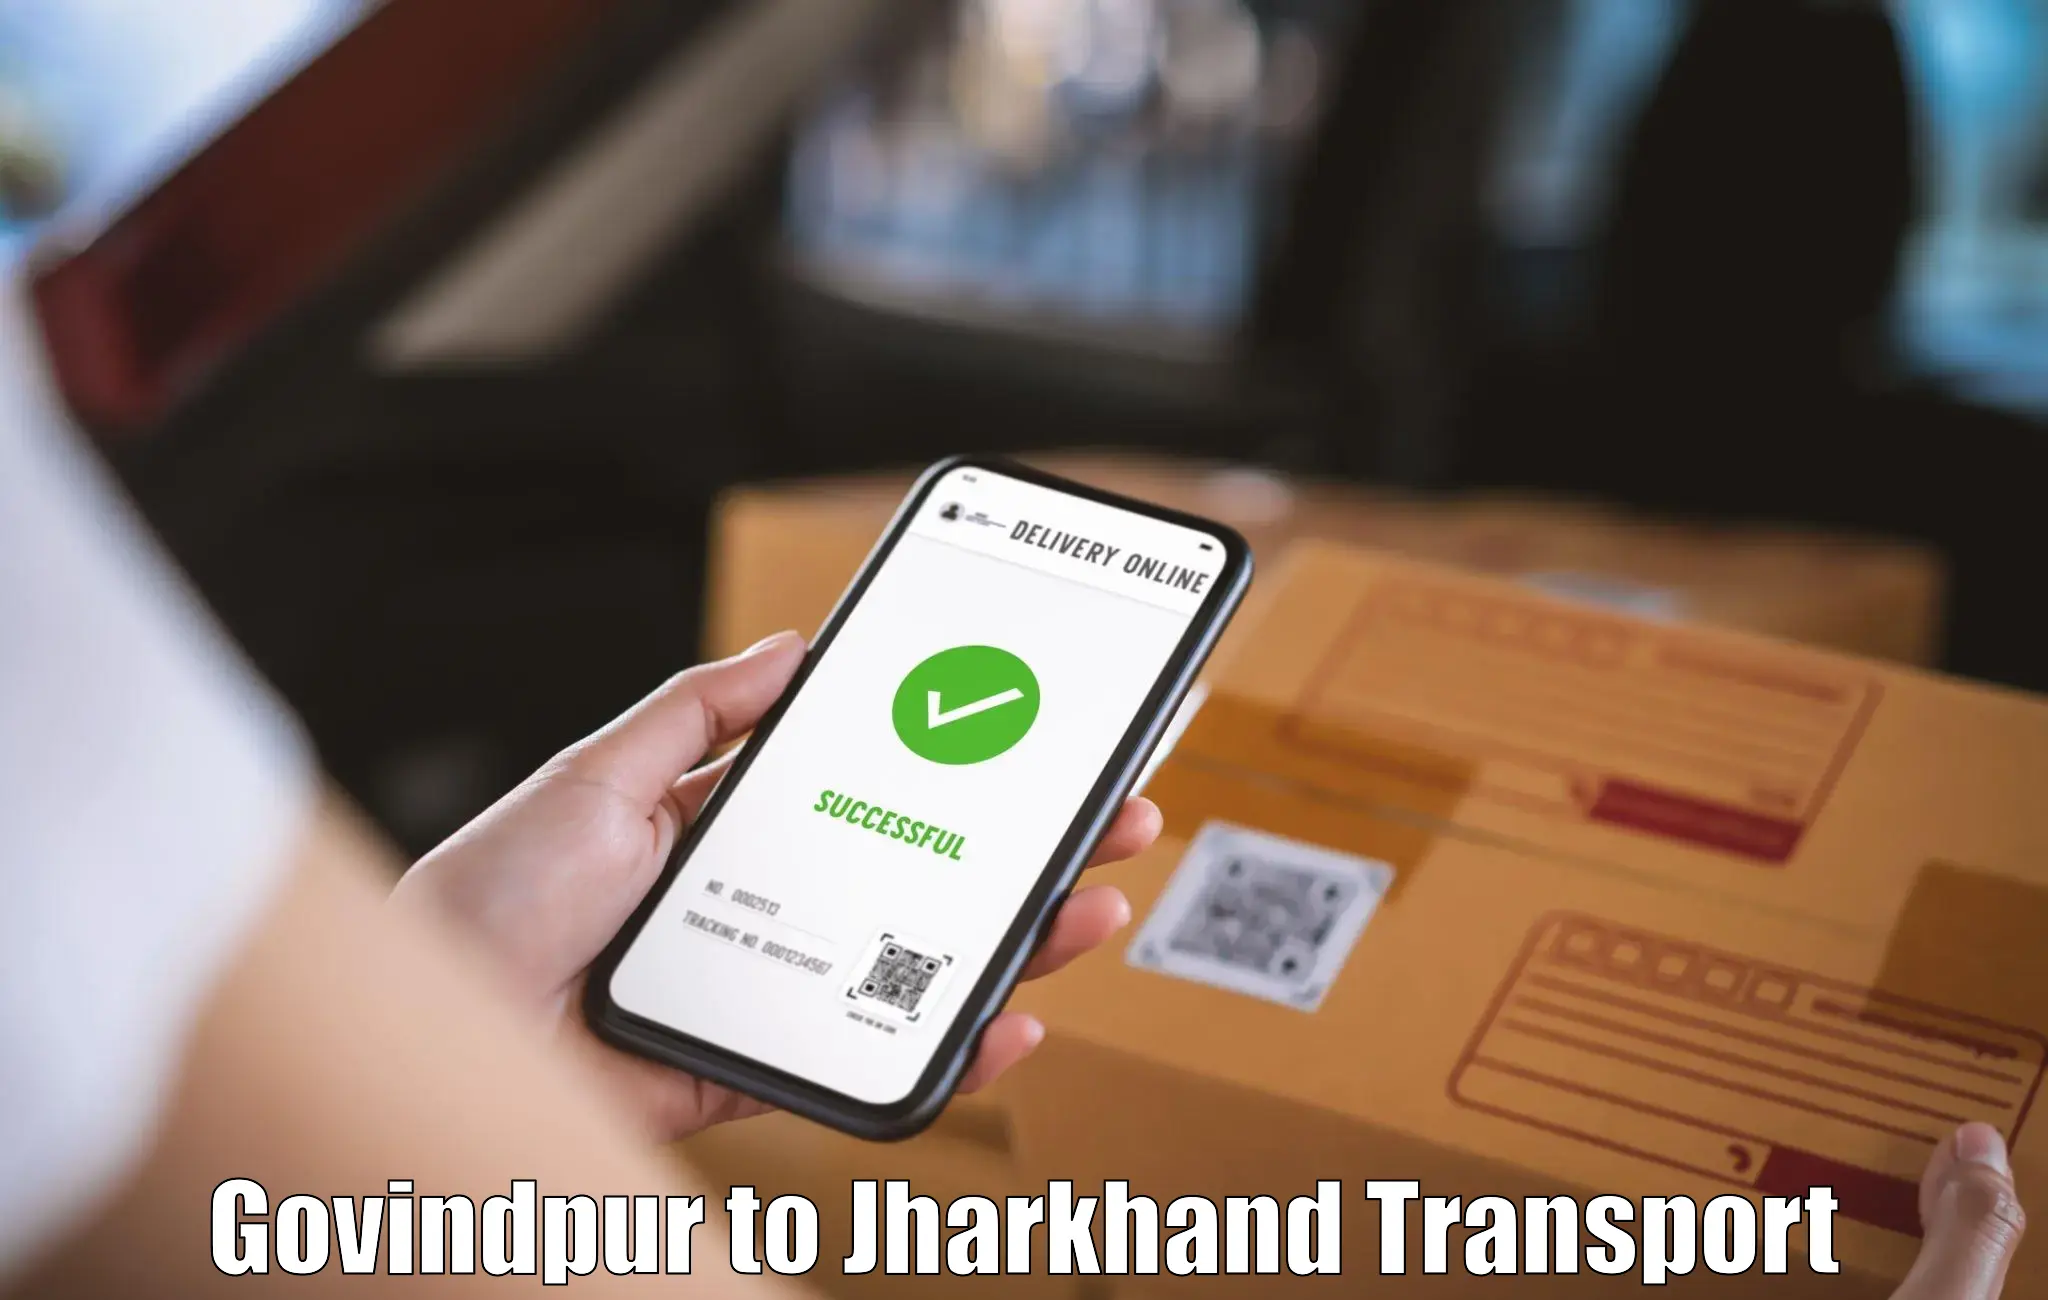 International cargo transportation services Govindpur to Medininagar